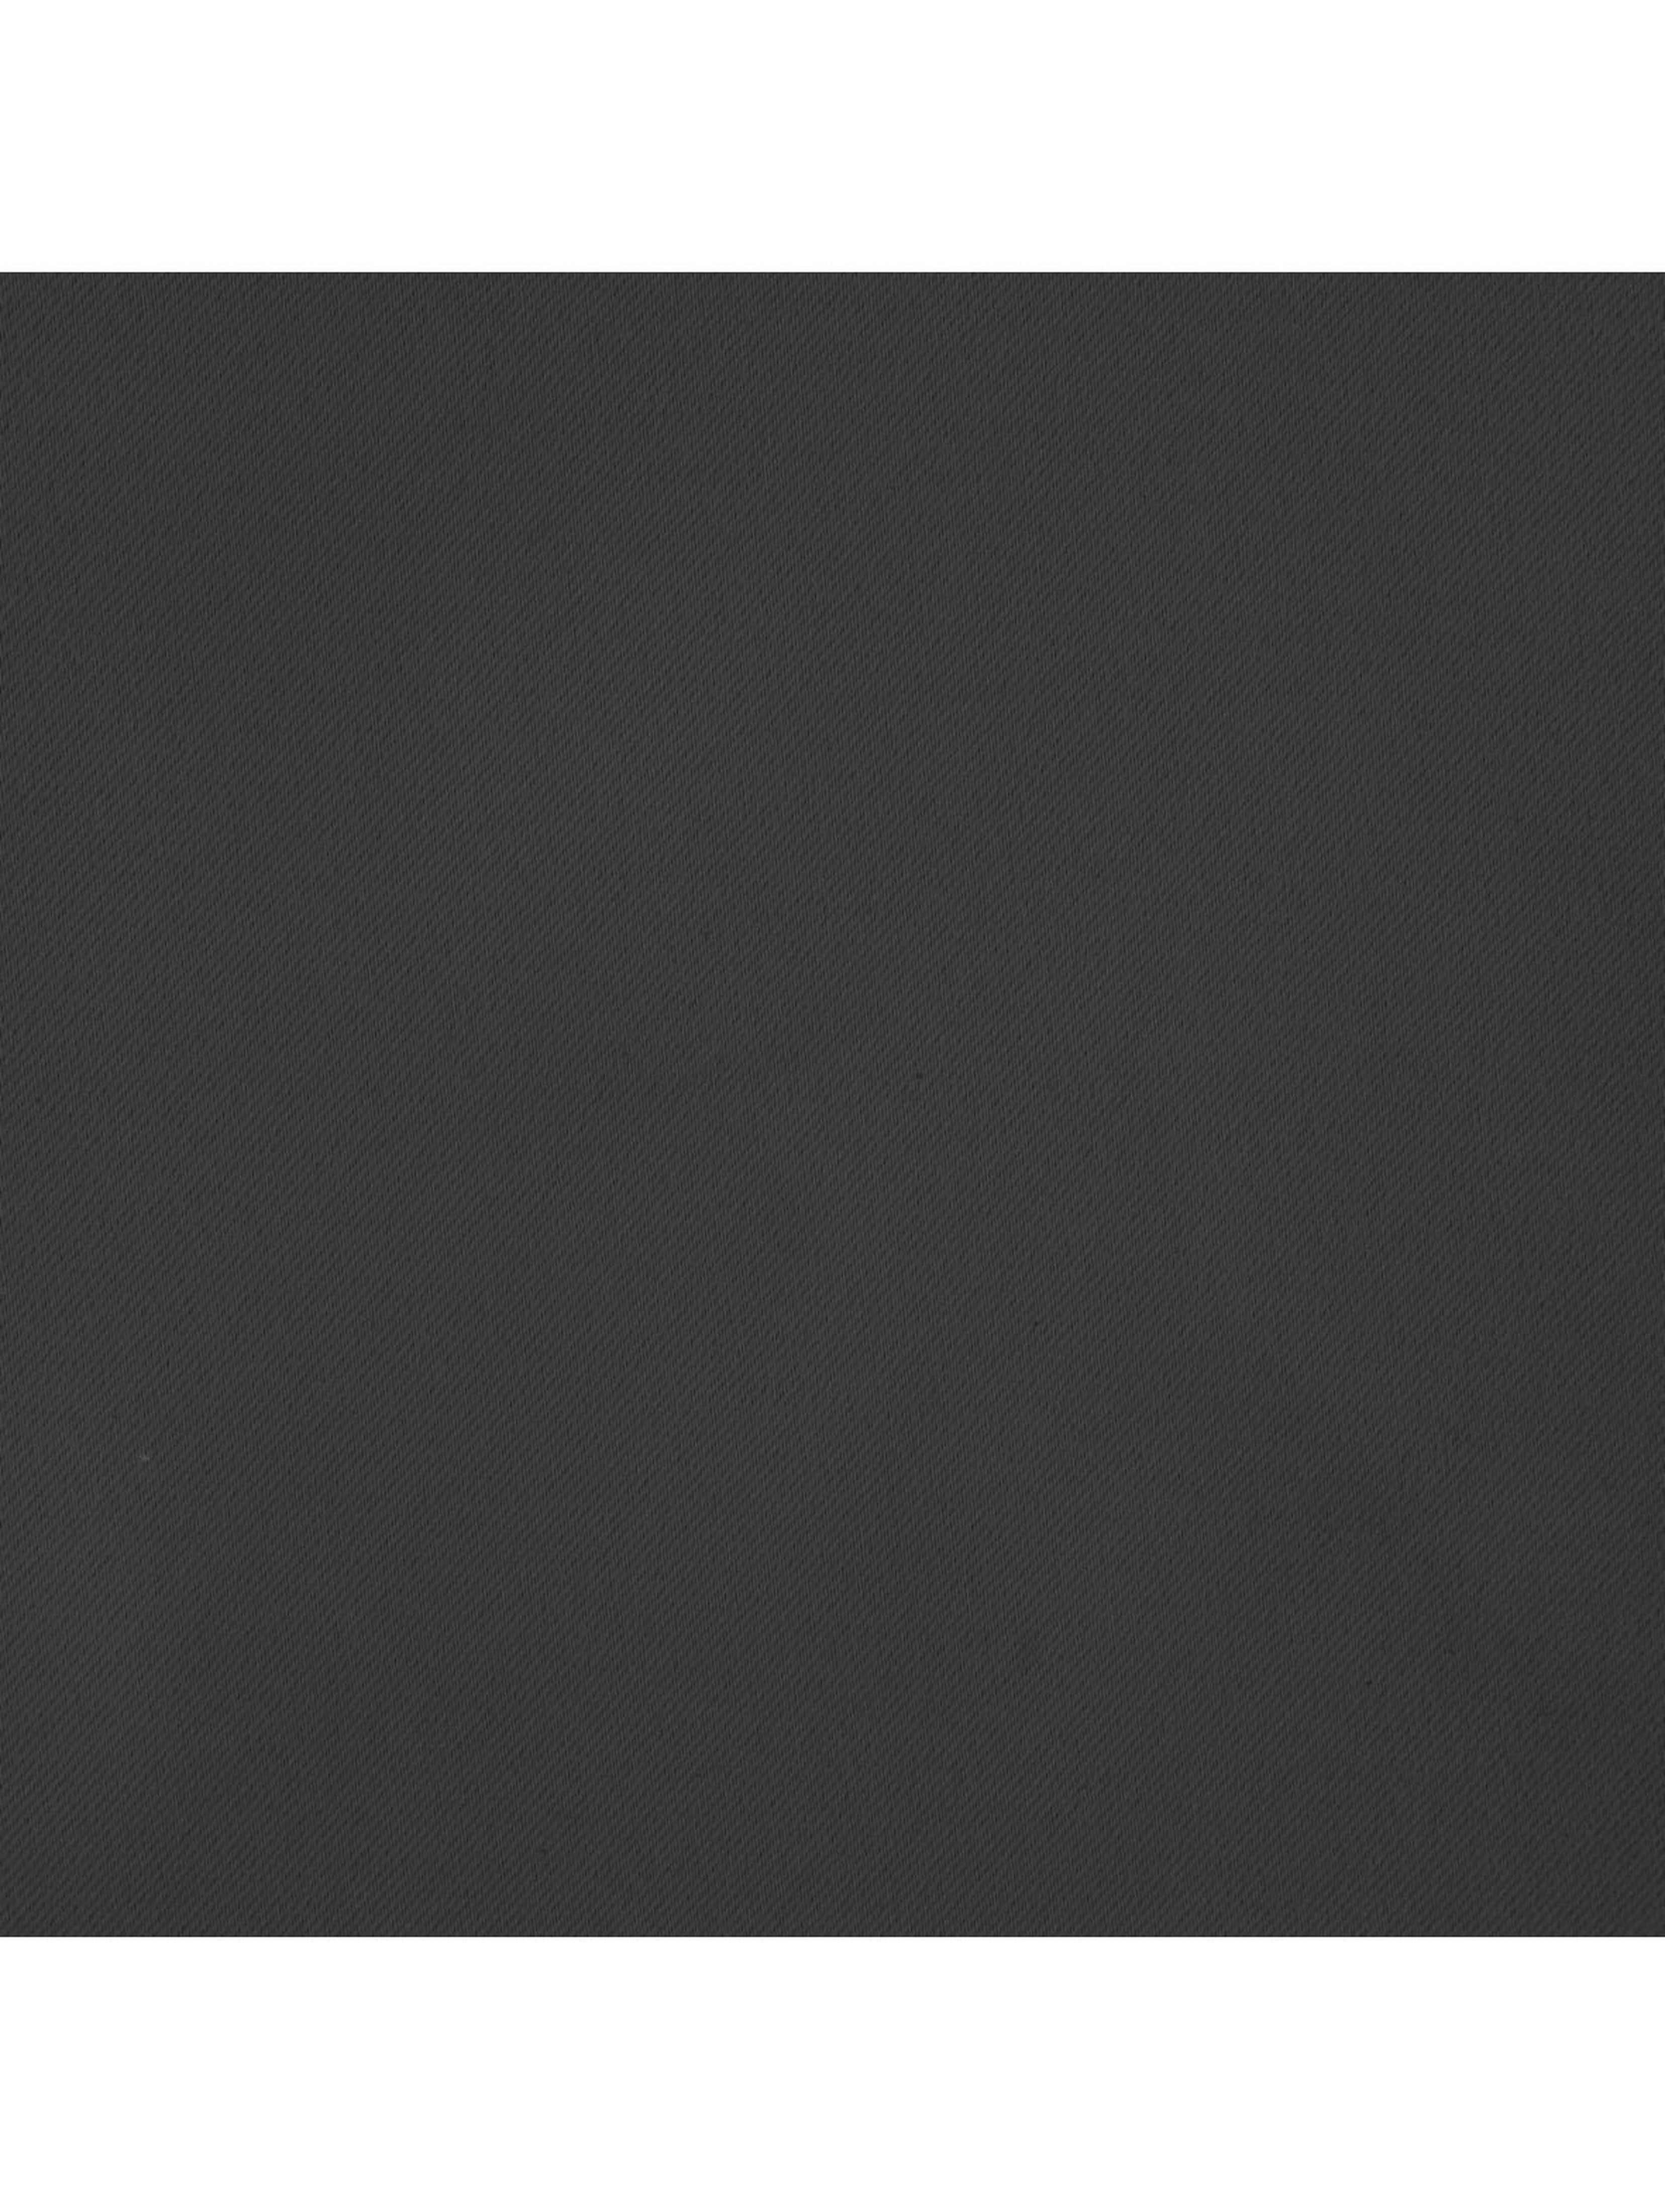 Zasłona jednokolorowa zaciemniająca - grafitowa - 135x270cm